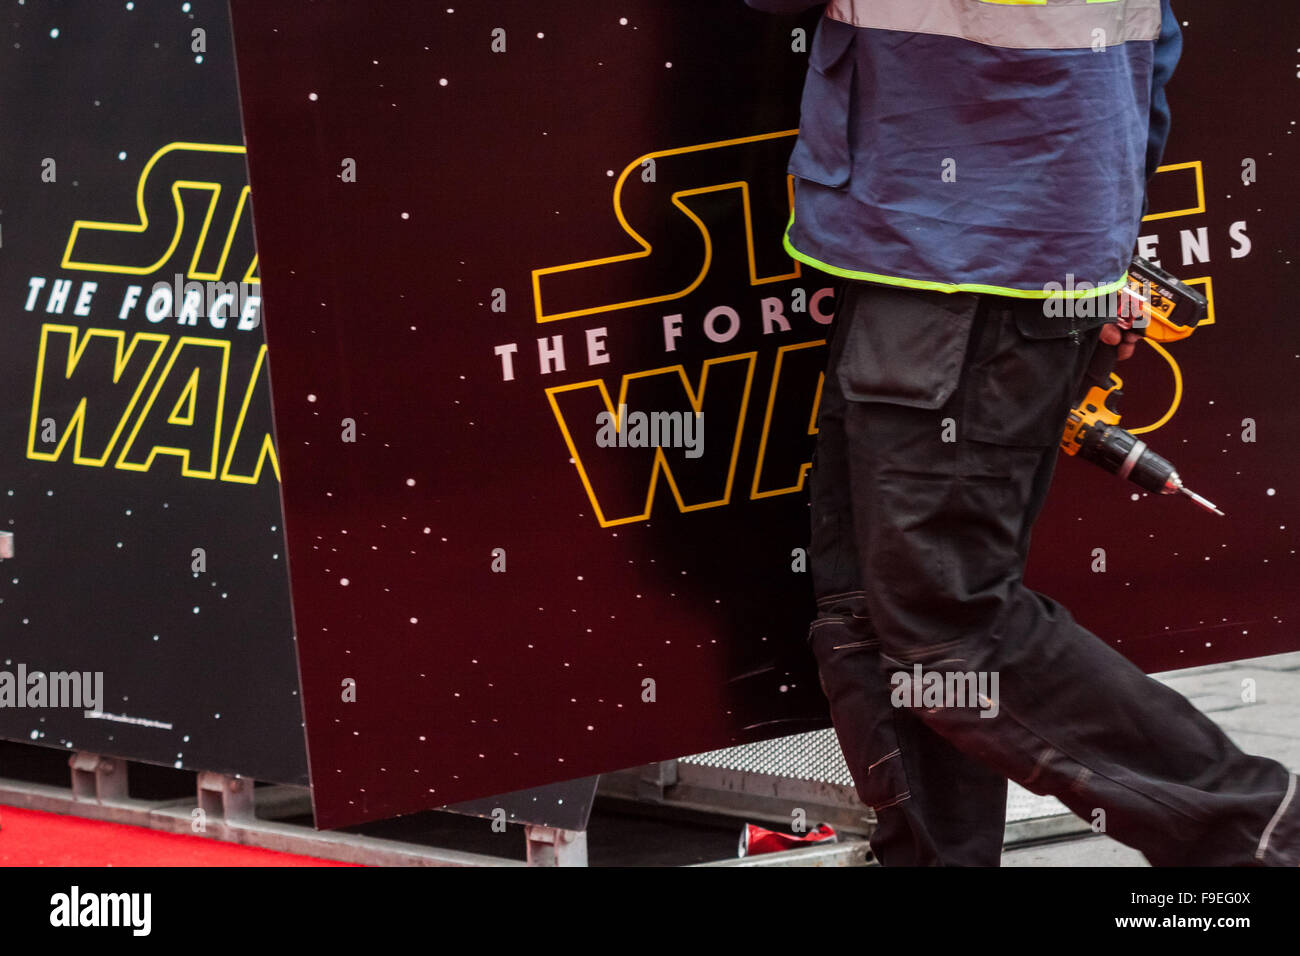 Londres, Reino Unido. 16 de diciembre de 2015. Star Wars: La Fuerza despierta preparativos para la película británica premiere en el Leicester Square de Londres. Crédito: Guy Corbishley/Alamy Live News Foto de stock